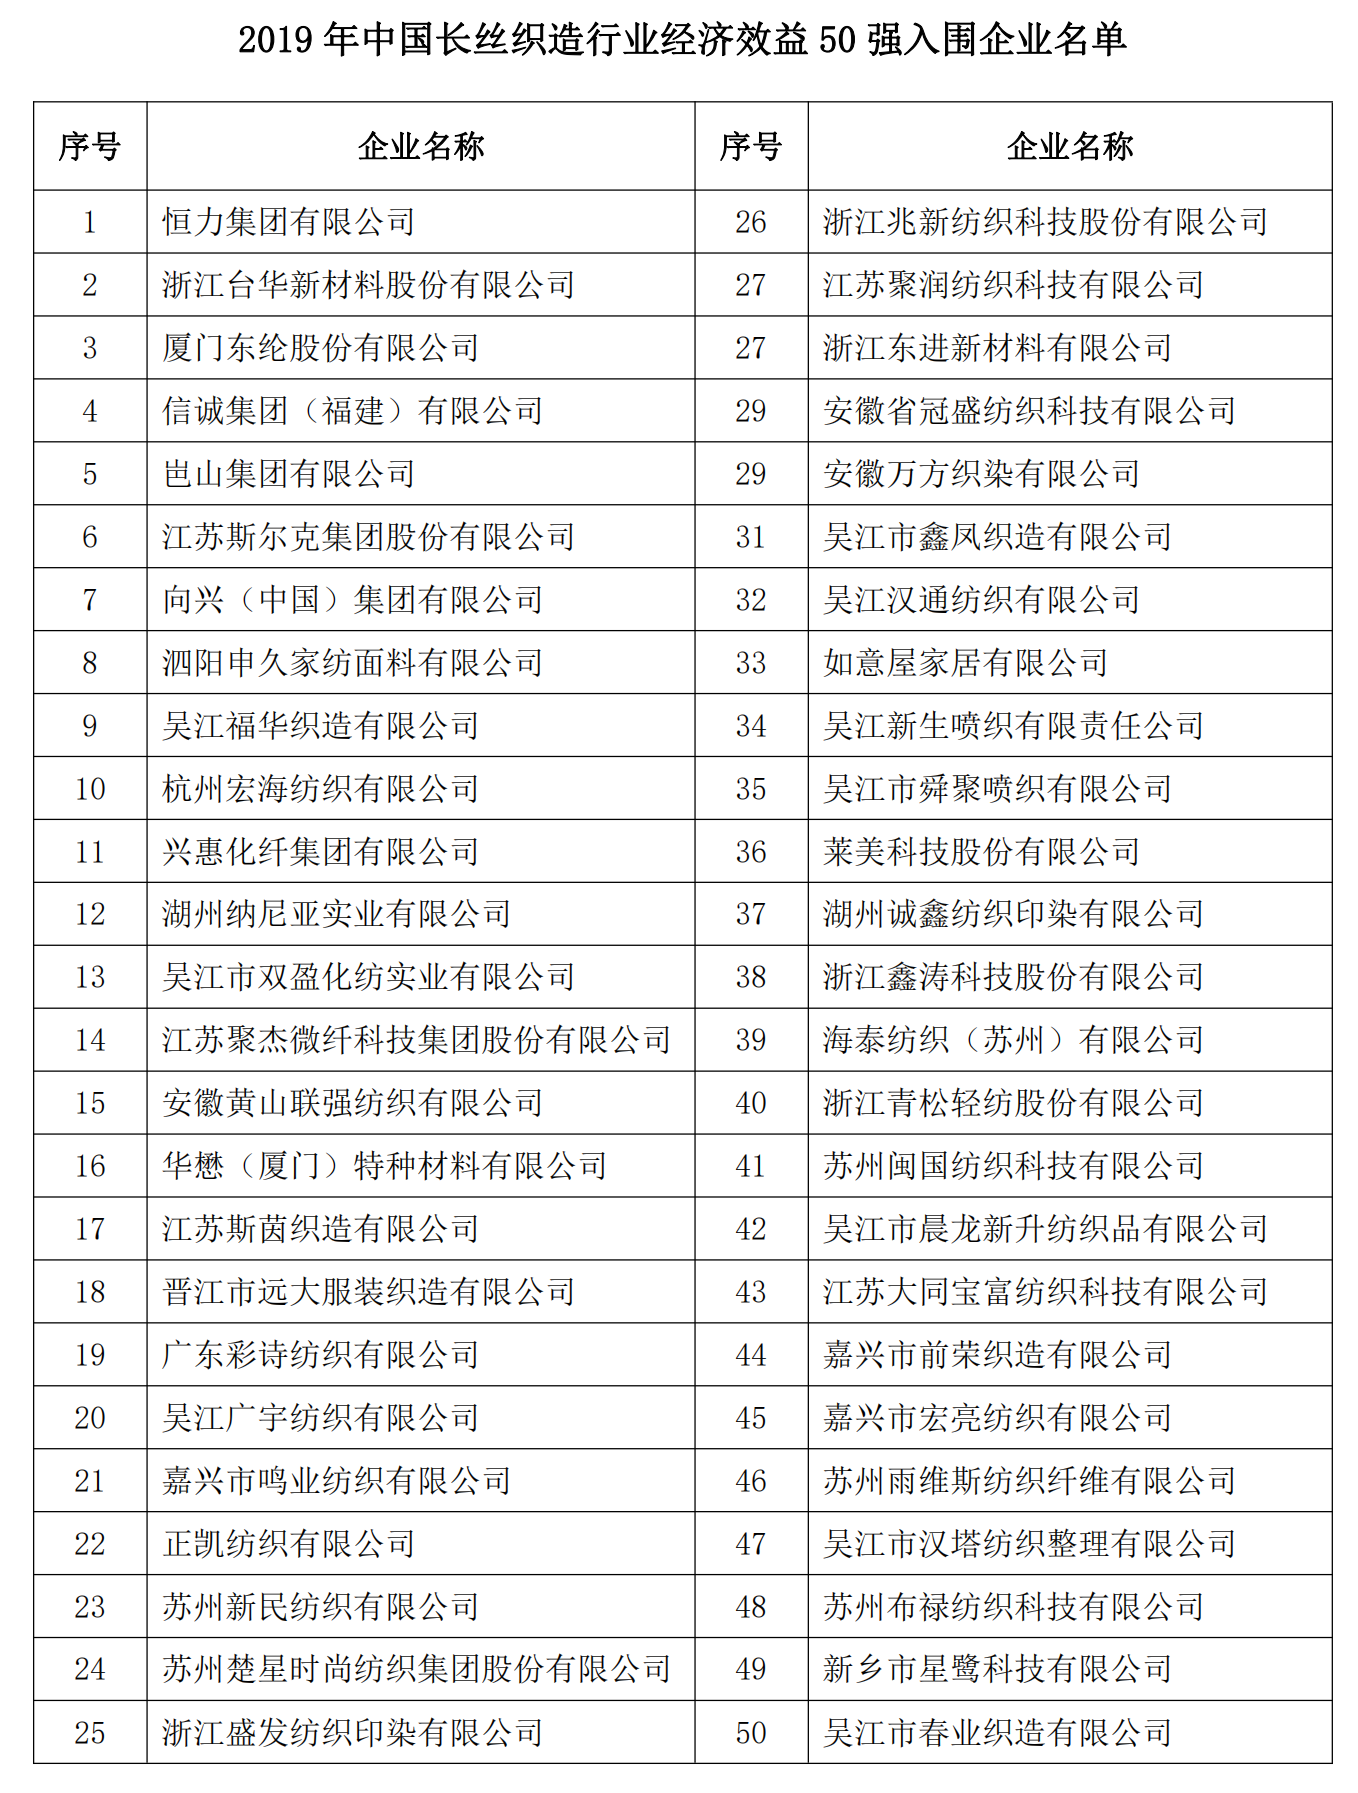 中国长丝织造行业2019年经济效益指标50强排名发布_01